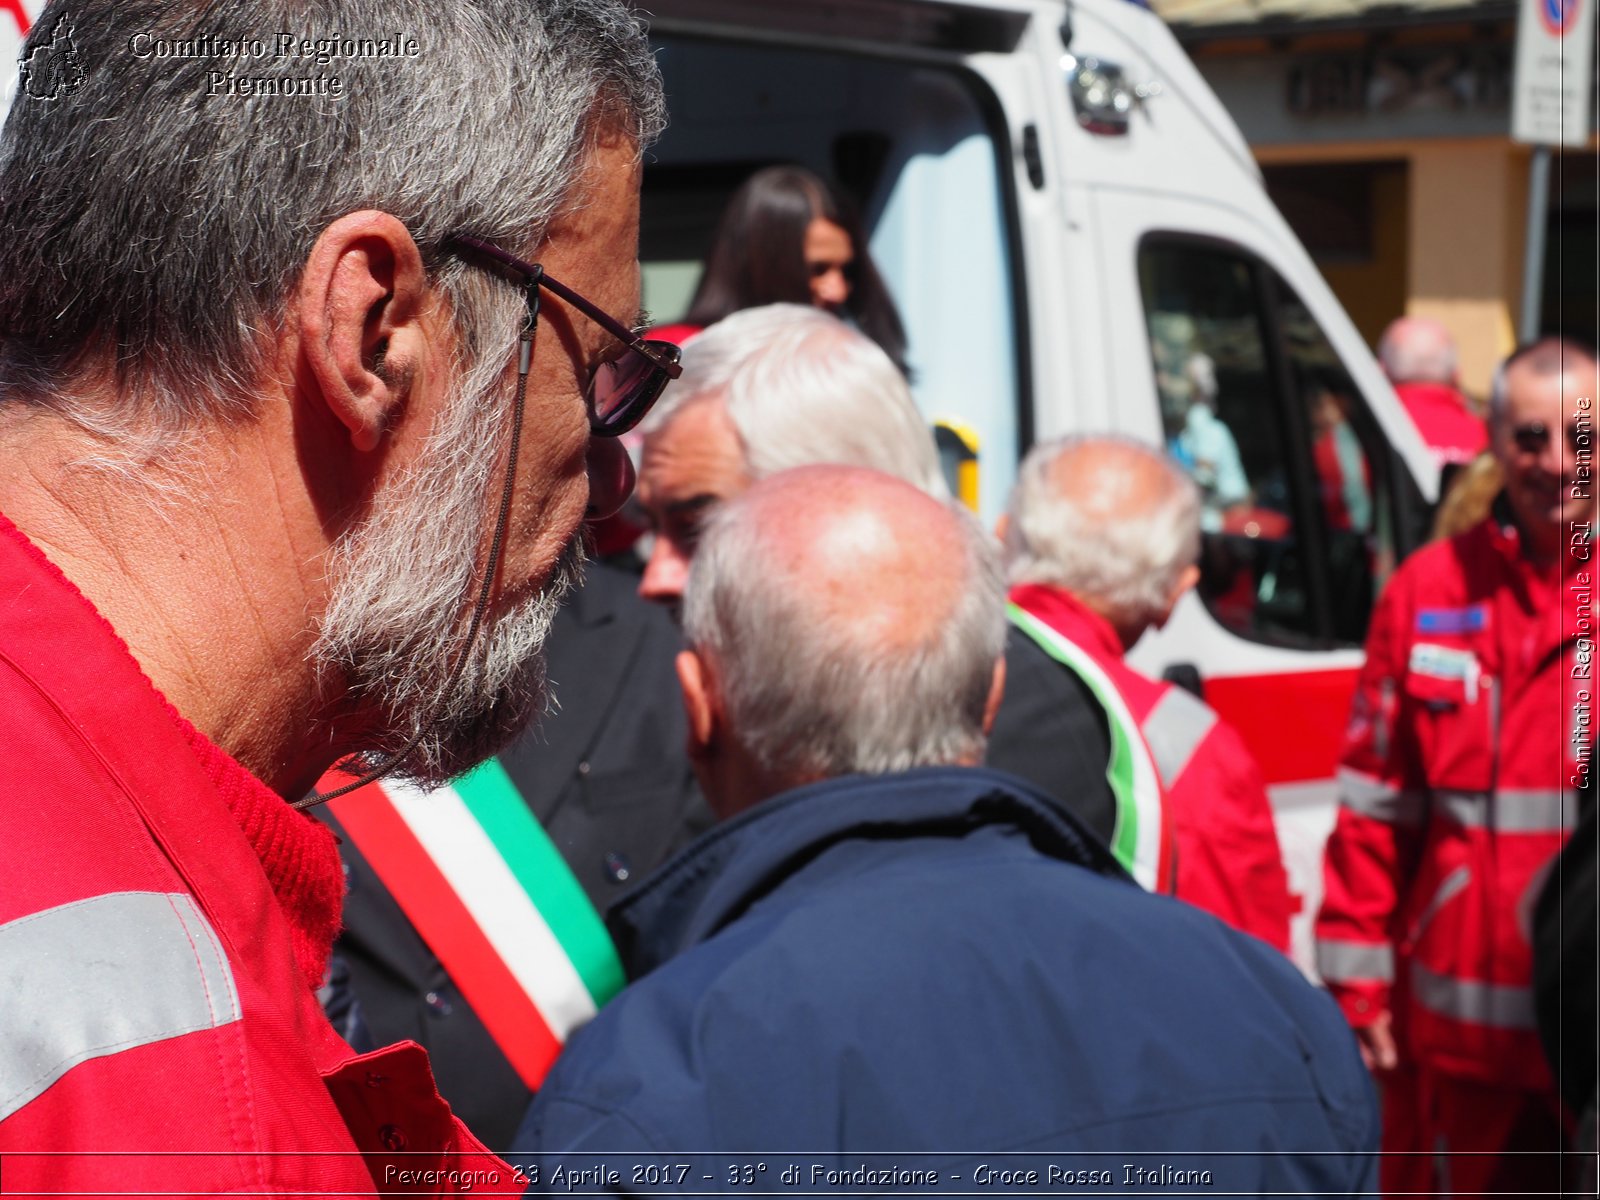 Peveragno 23 Aprile 2017 - 33 di Fondazione - Croce Rossa Italiana- Comitato Regionale del Piemonte